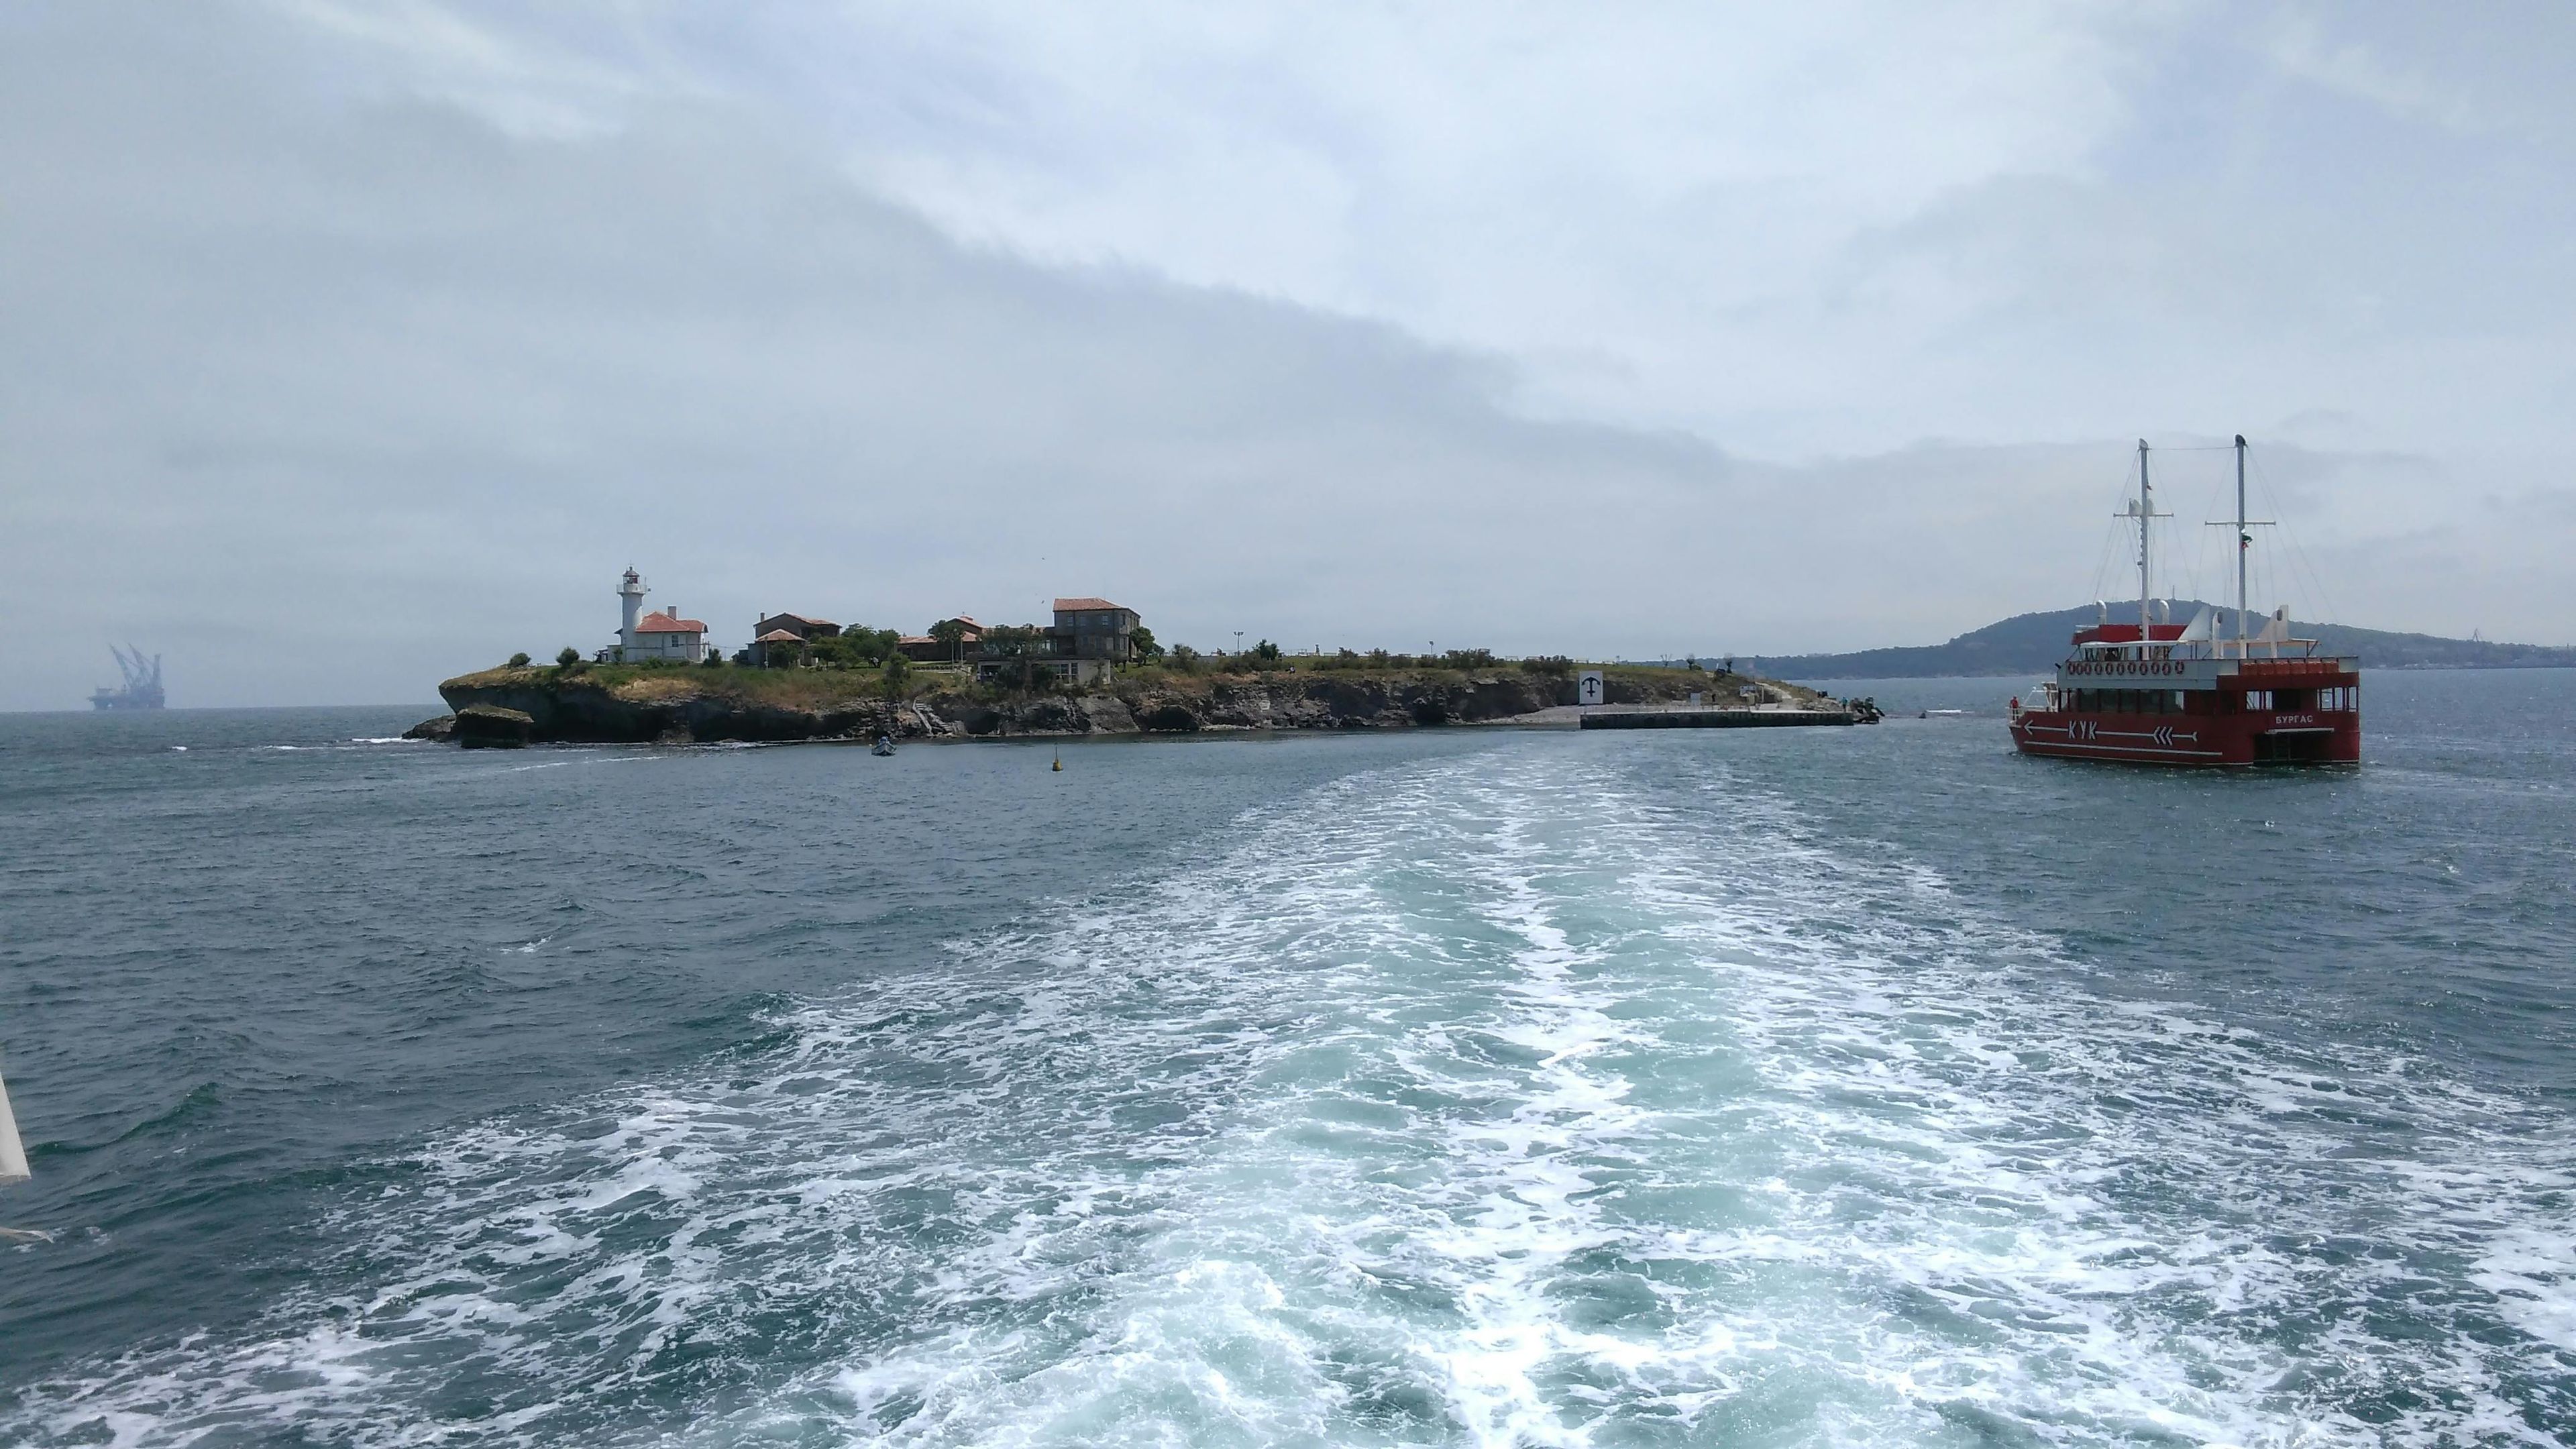 Imagen del tour: Visita única a la isla de Santa Anastasia en el Mar Negro búlgaro